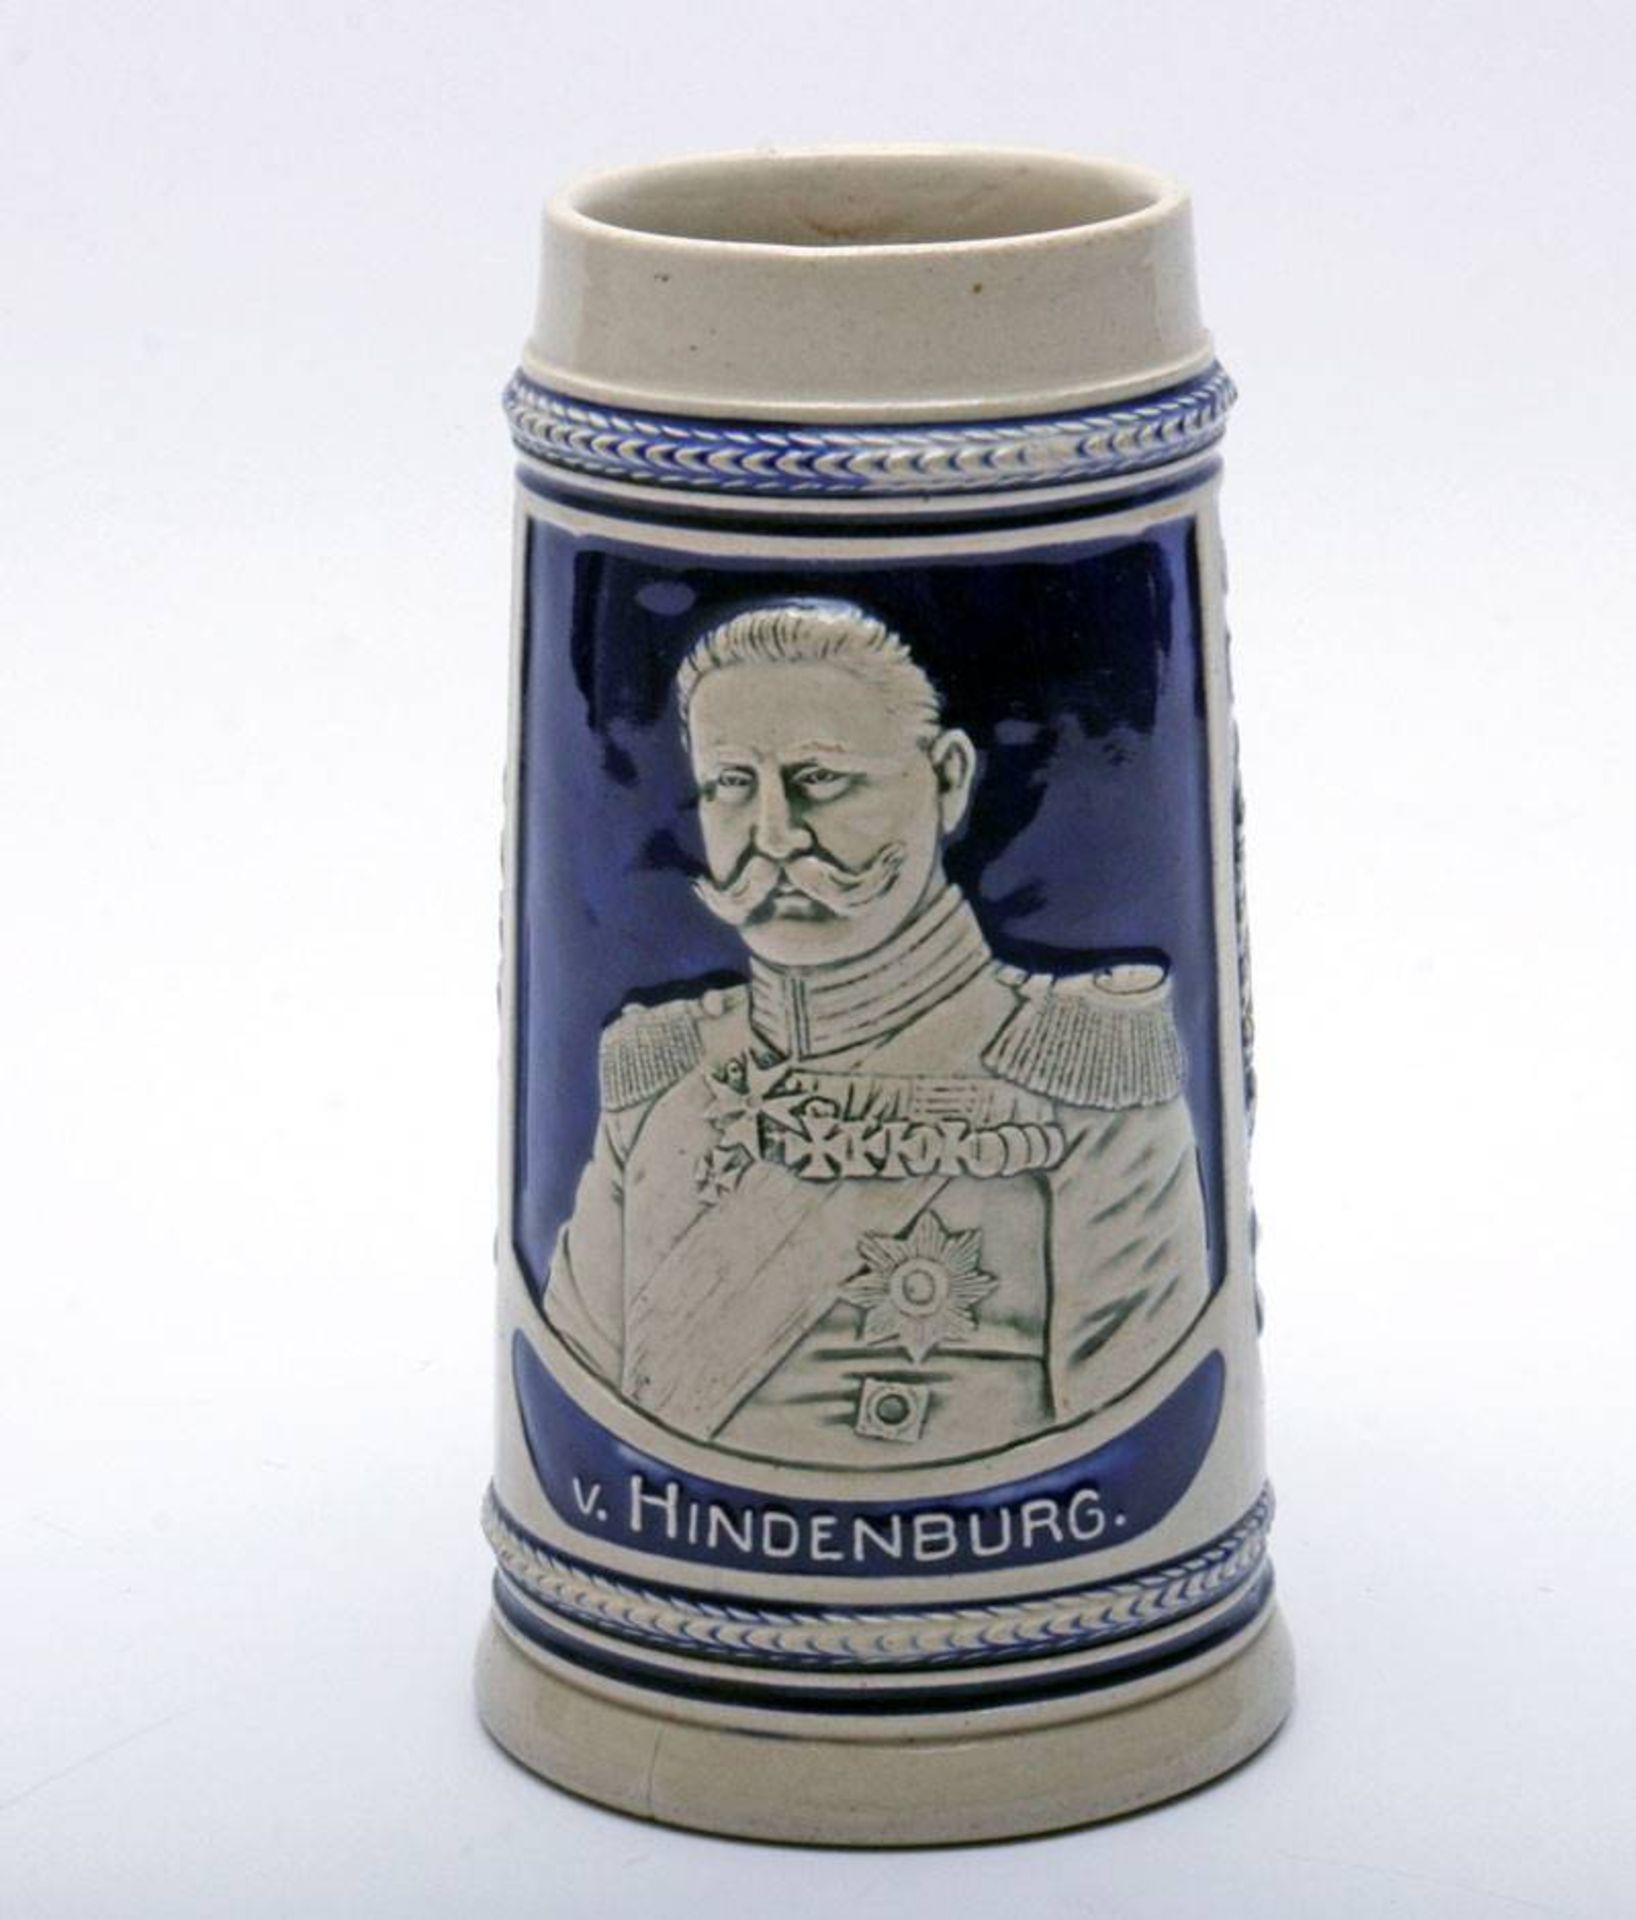 ReservistenkrugSteinzeug, tlw. blau glasiert, Reliefprägung mit schauseitigem Hindenburg-Porträt, - Bild 2 aus 5